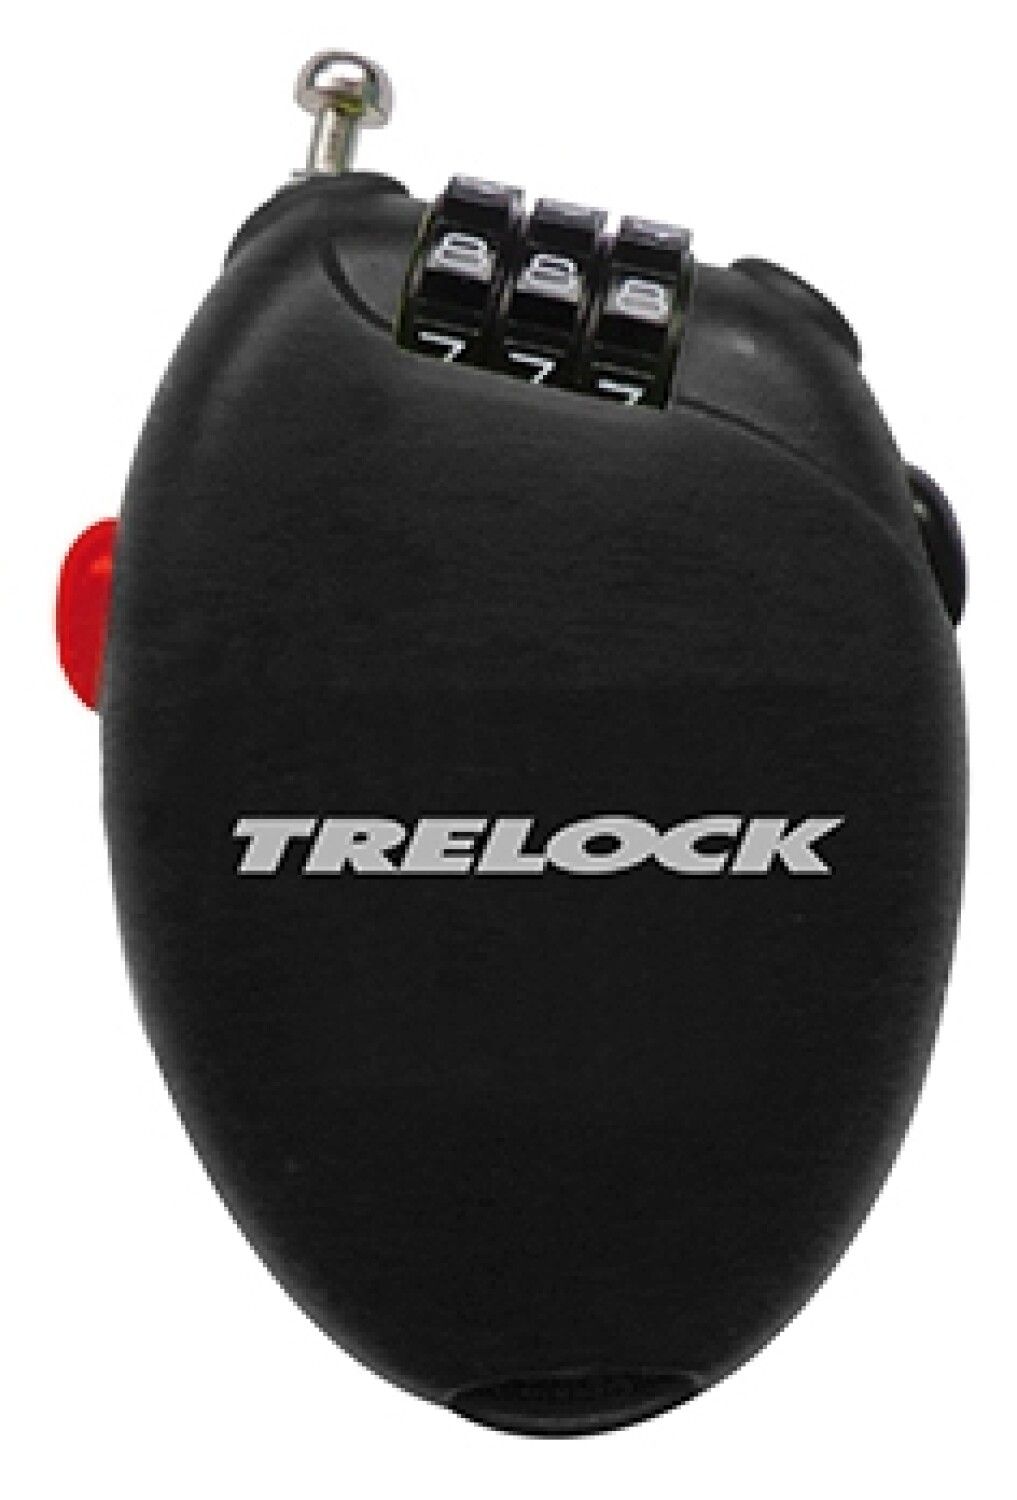 Trelock RK 75 POCKET (Bild 2)